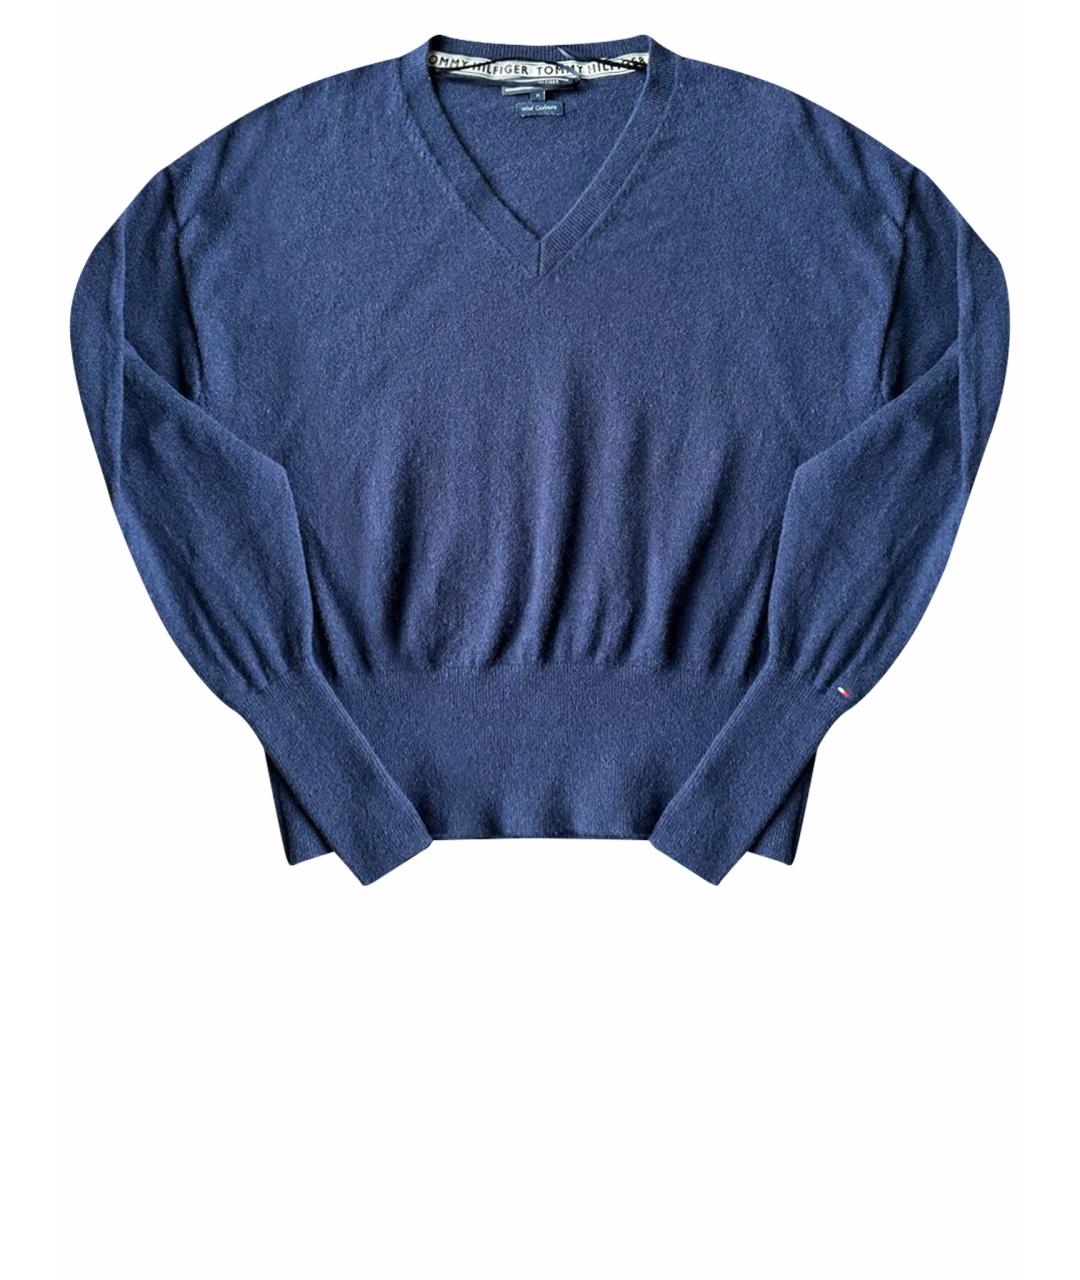 TOMMY HILFIGER Темно-синий кашемировый джемпер / свитер, фото 1